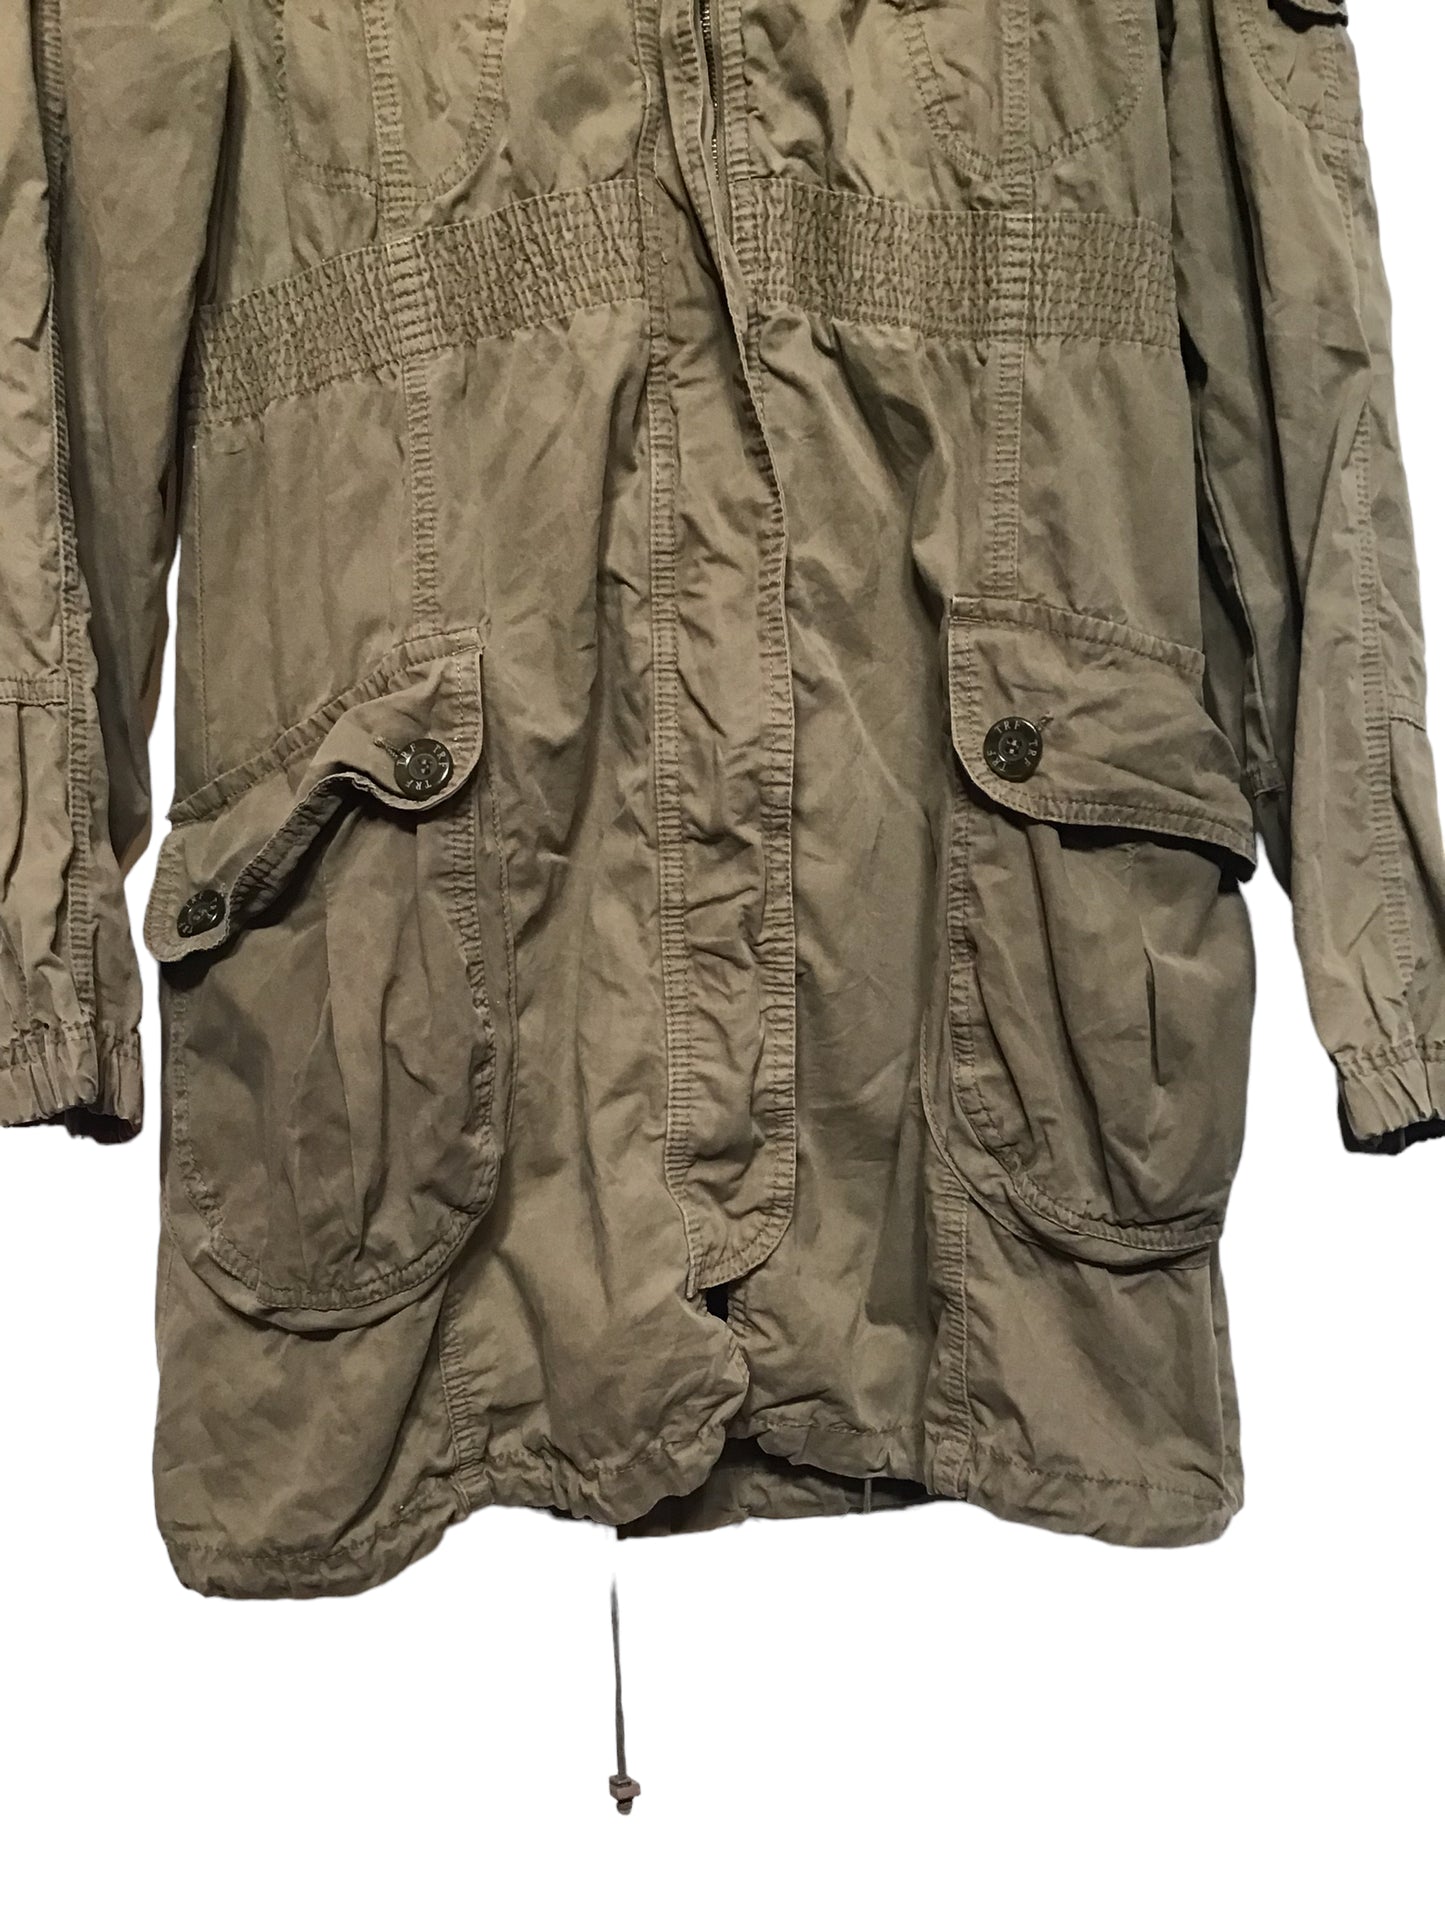 Khaki Green Jacket (Size M)